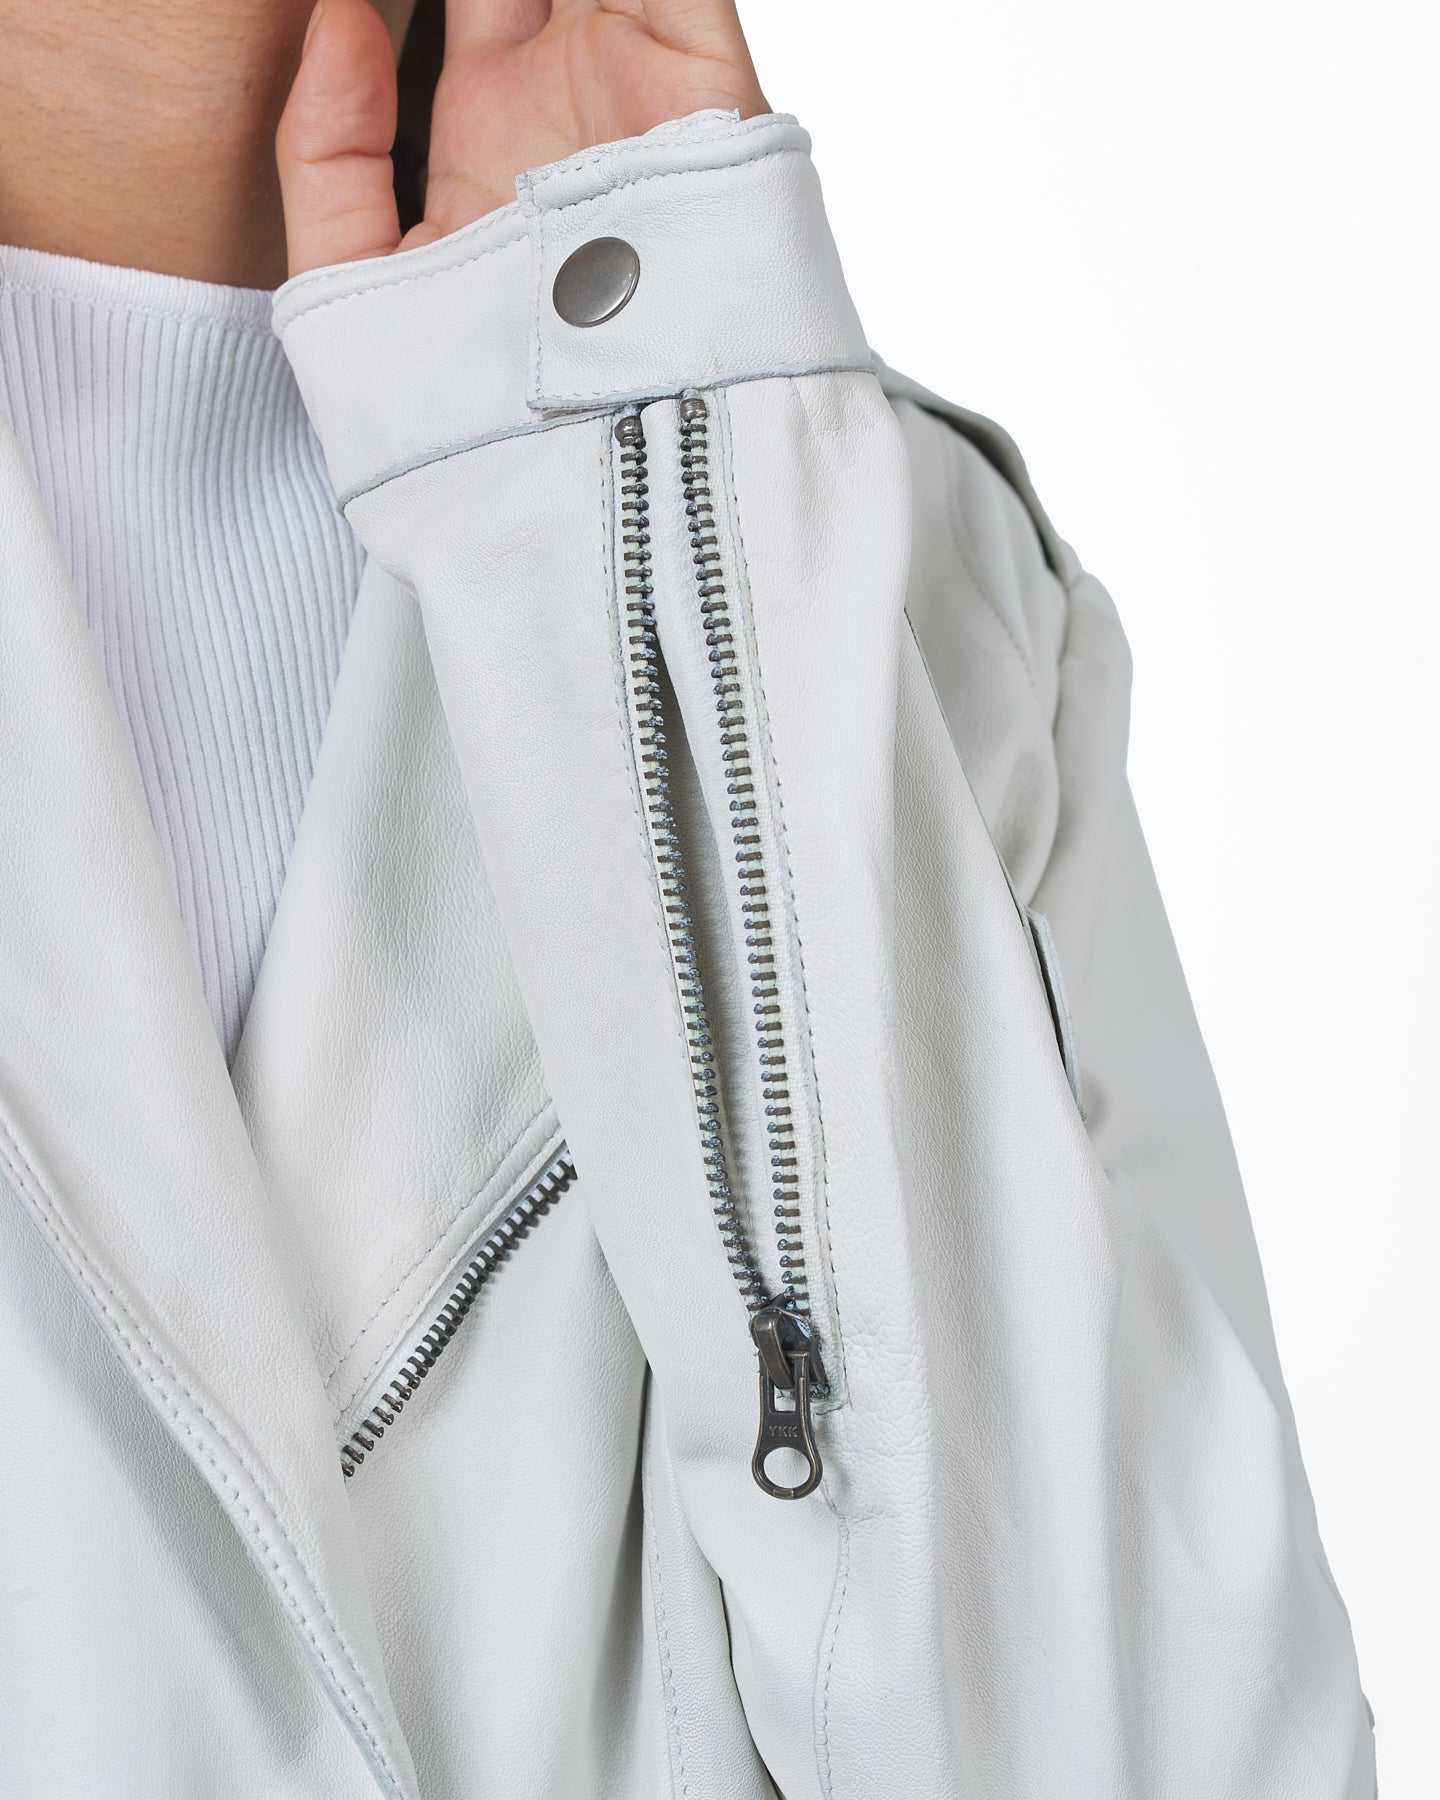 Jakett Josey Leather – Jacket Vintage White jakett